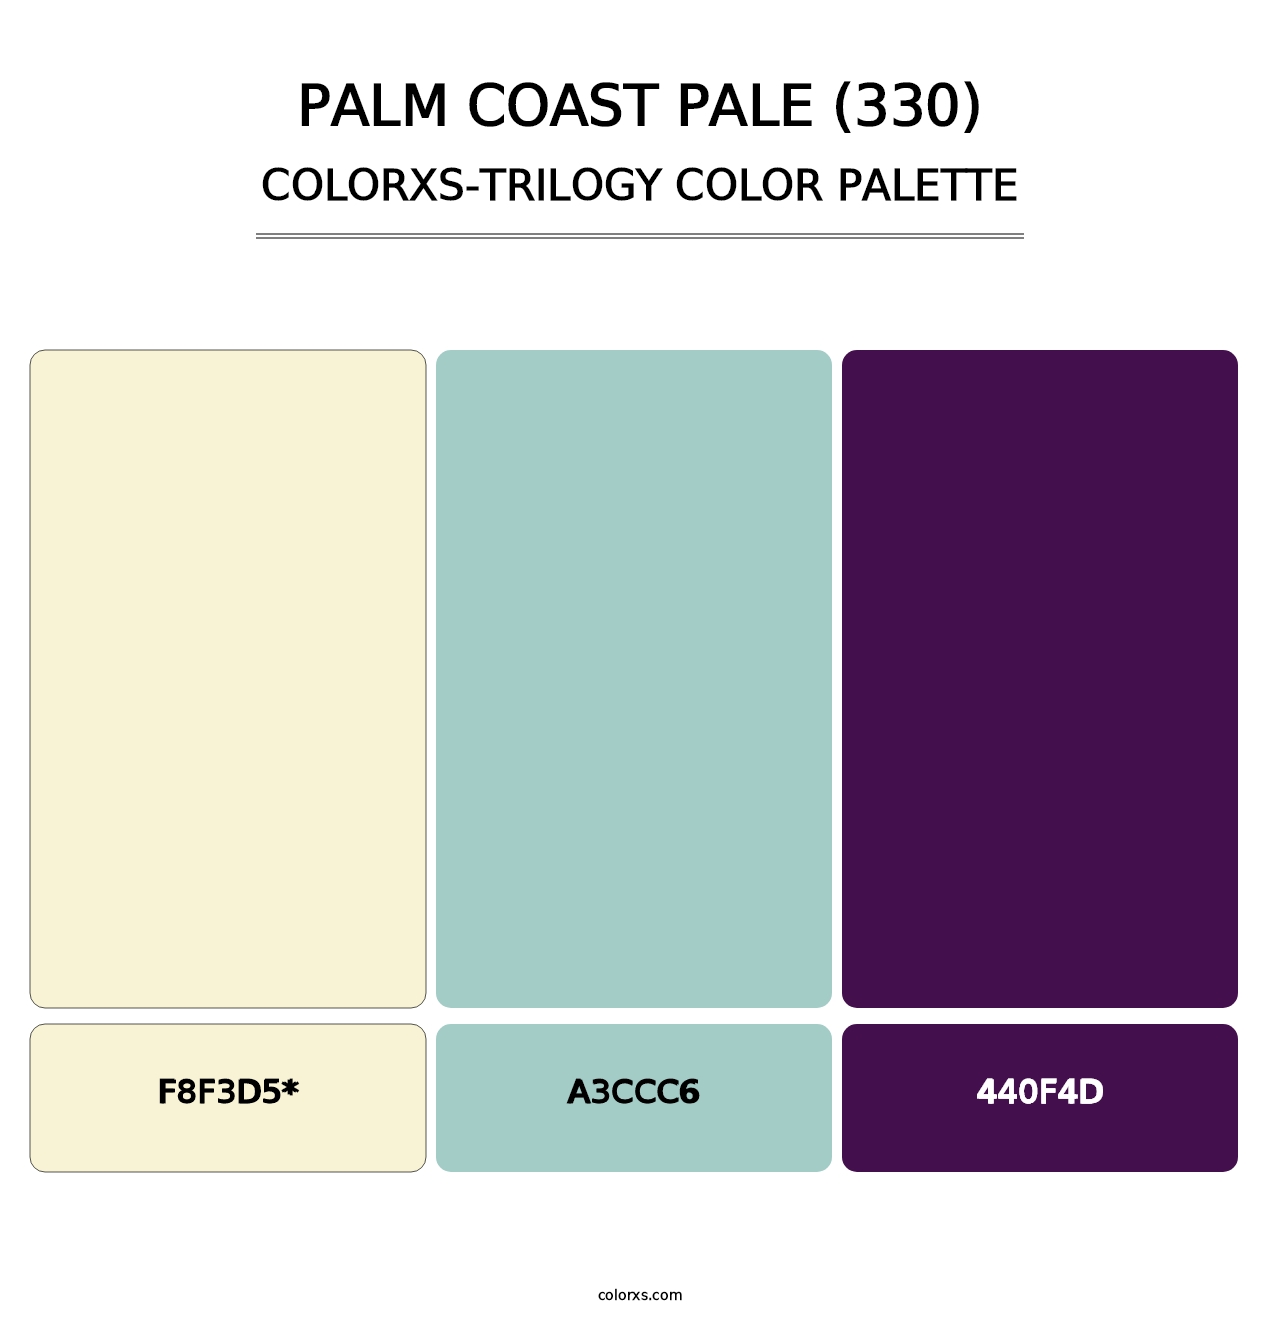 Palm Coast Pale (330) - Colorxs Trilogy Palette